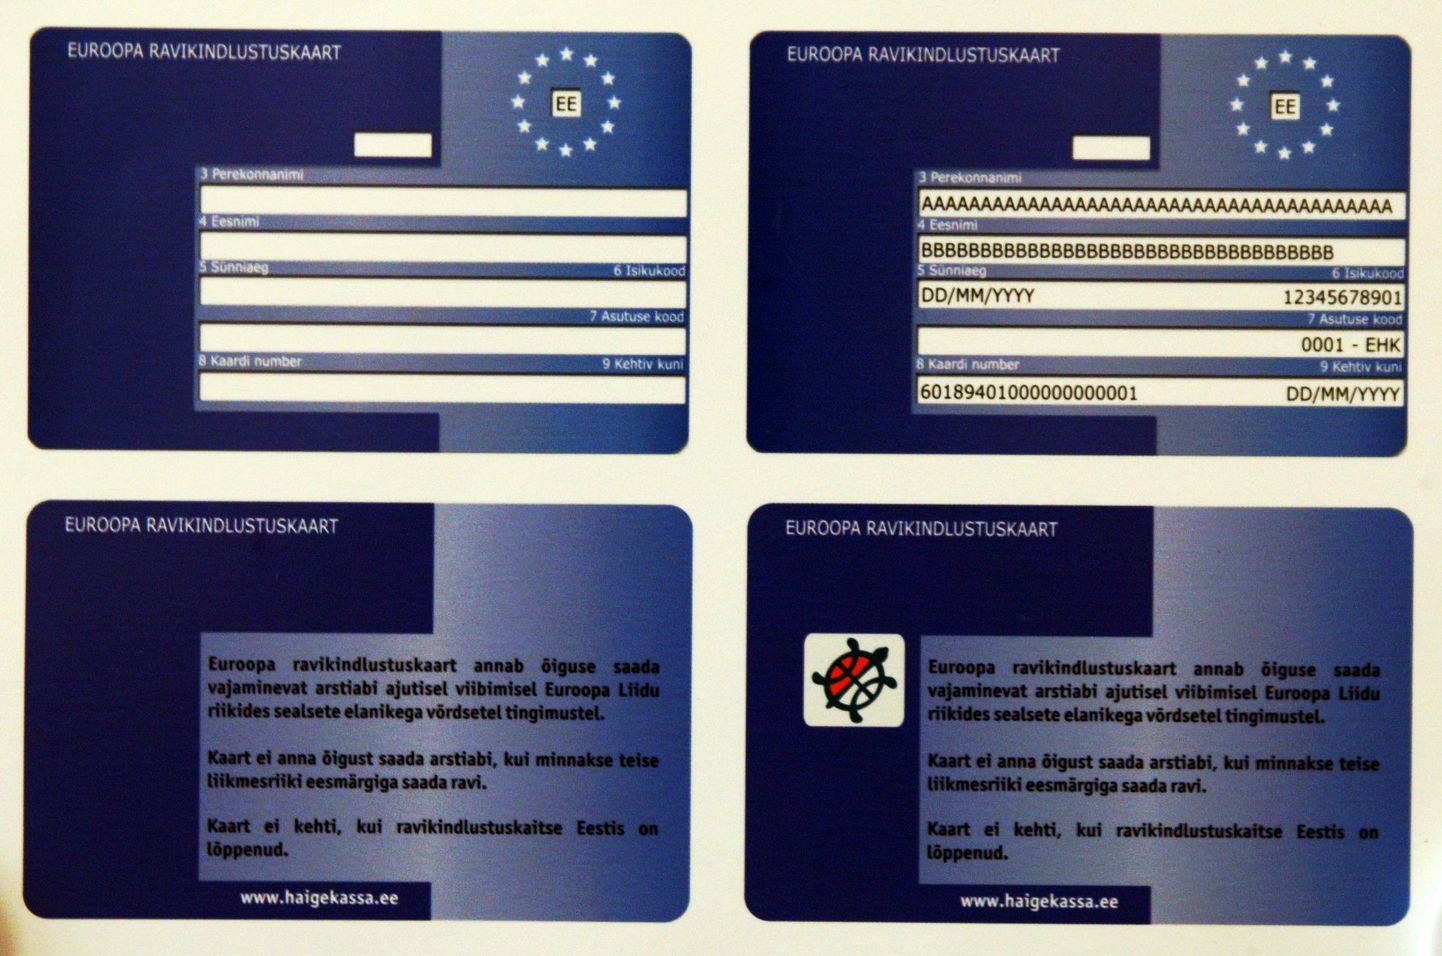 Карточки больничного страхования европейского образца.